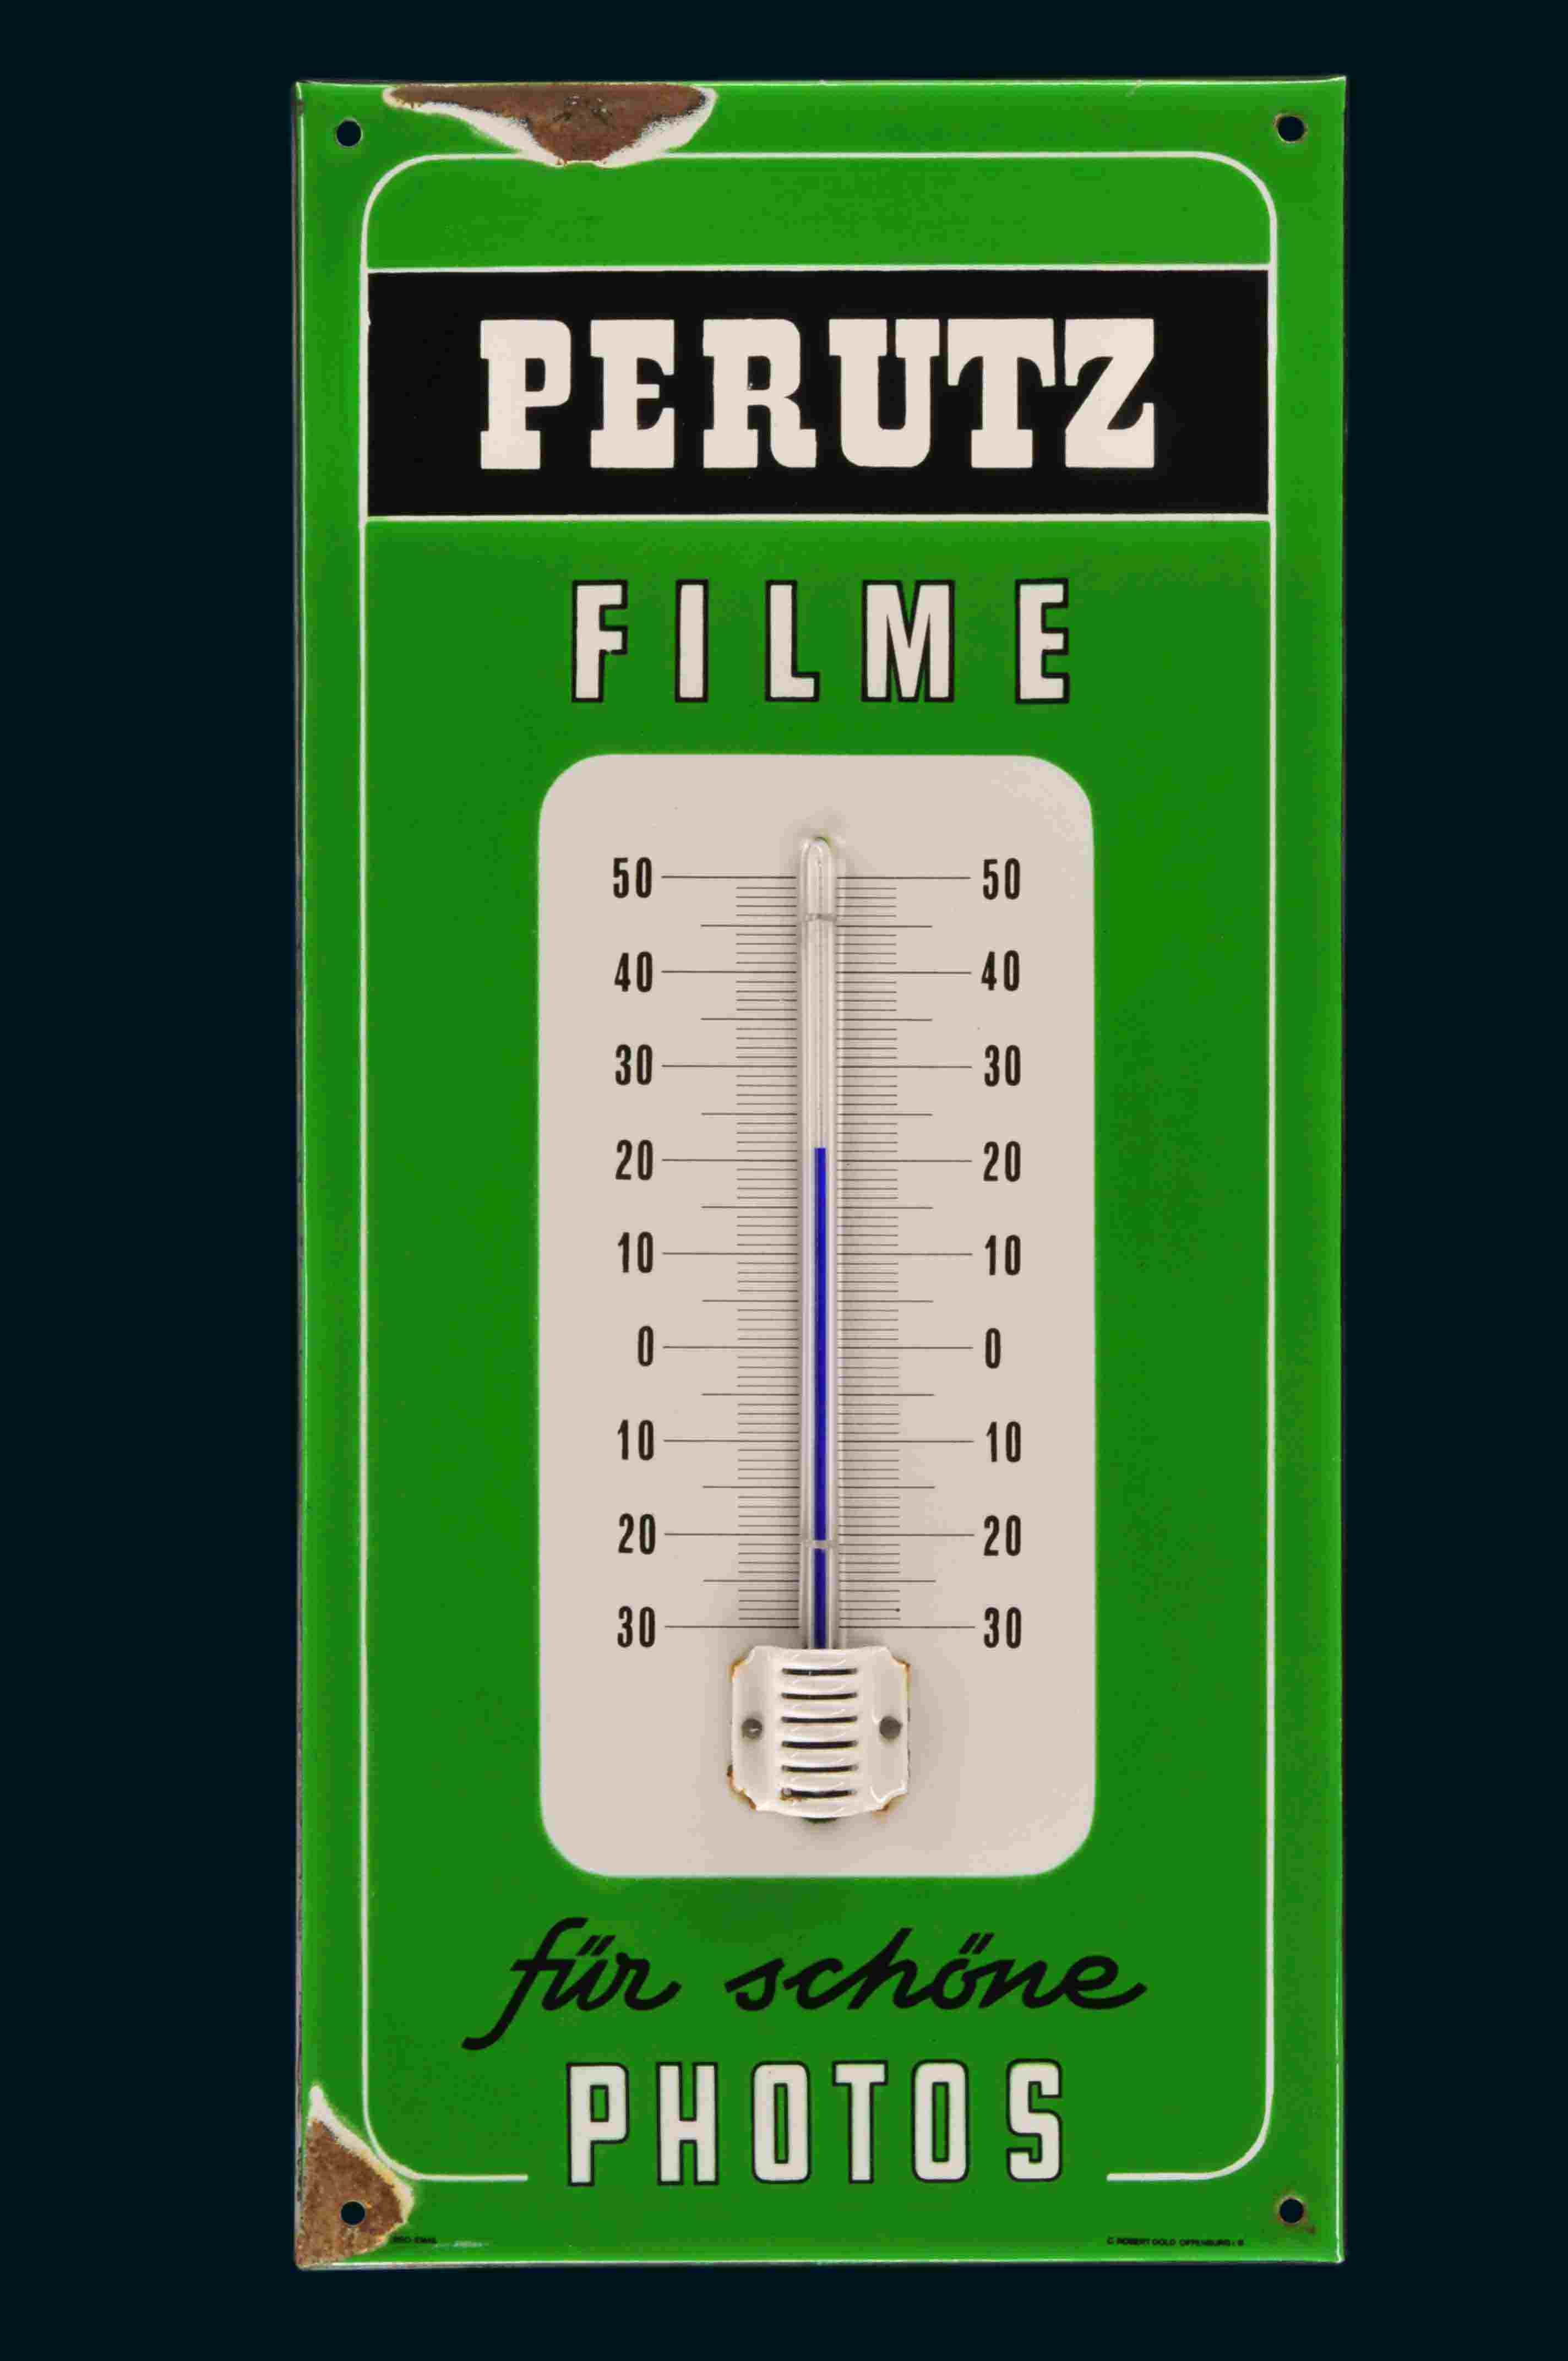 Perutz Filme Photos Thermometer 